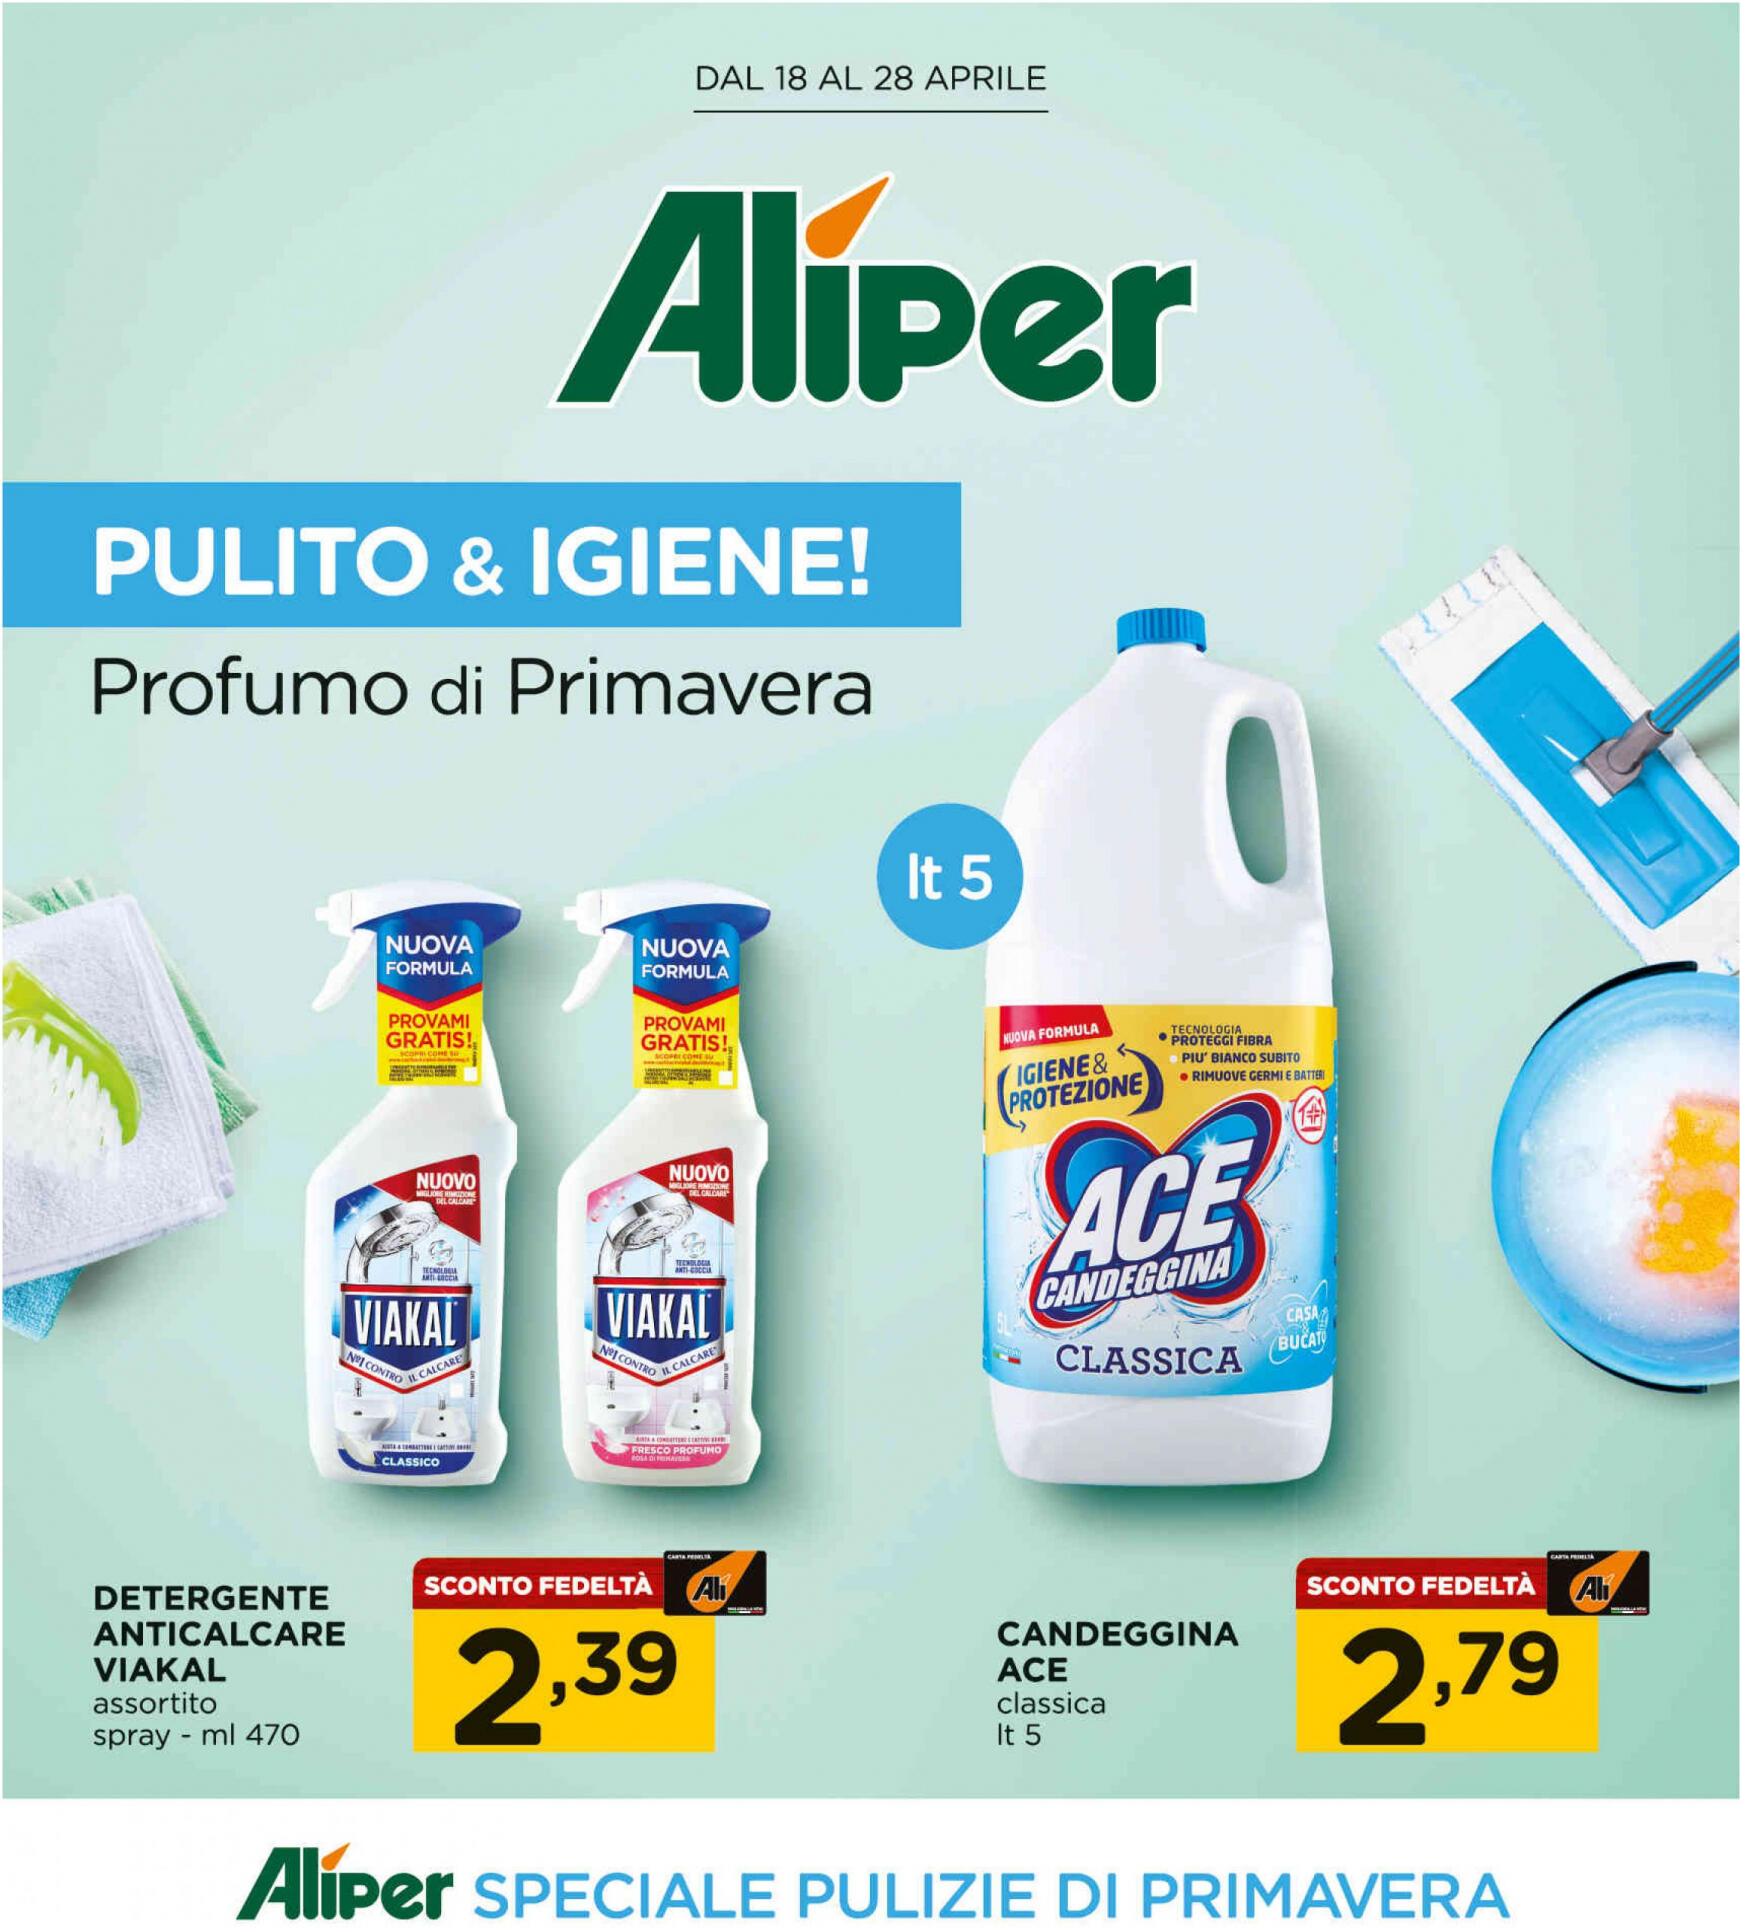 ali-aliper - Nuovo volantino Aliper - Pulito & igiene! 18.04. - 28.04.